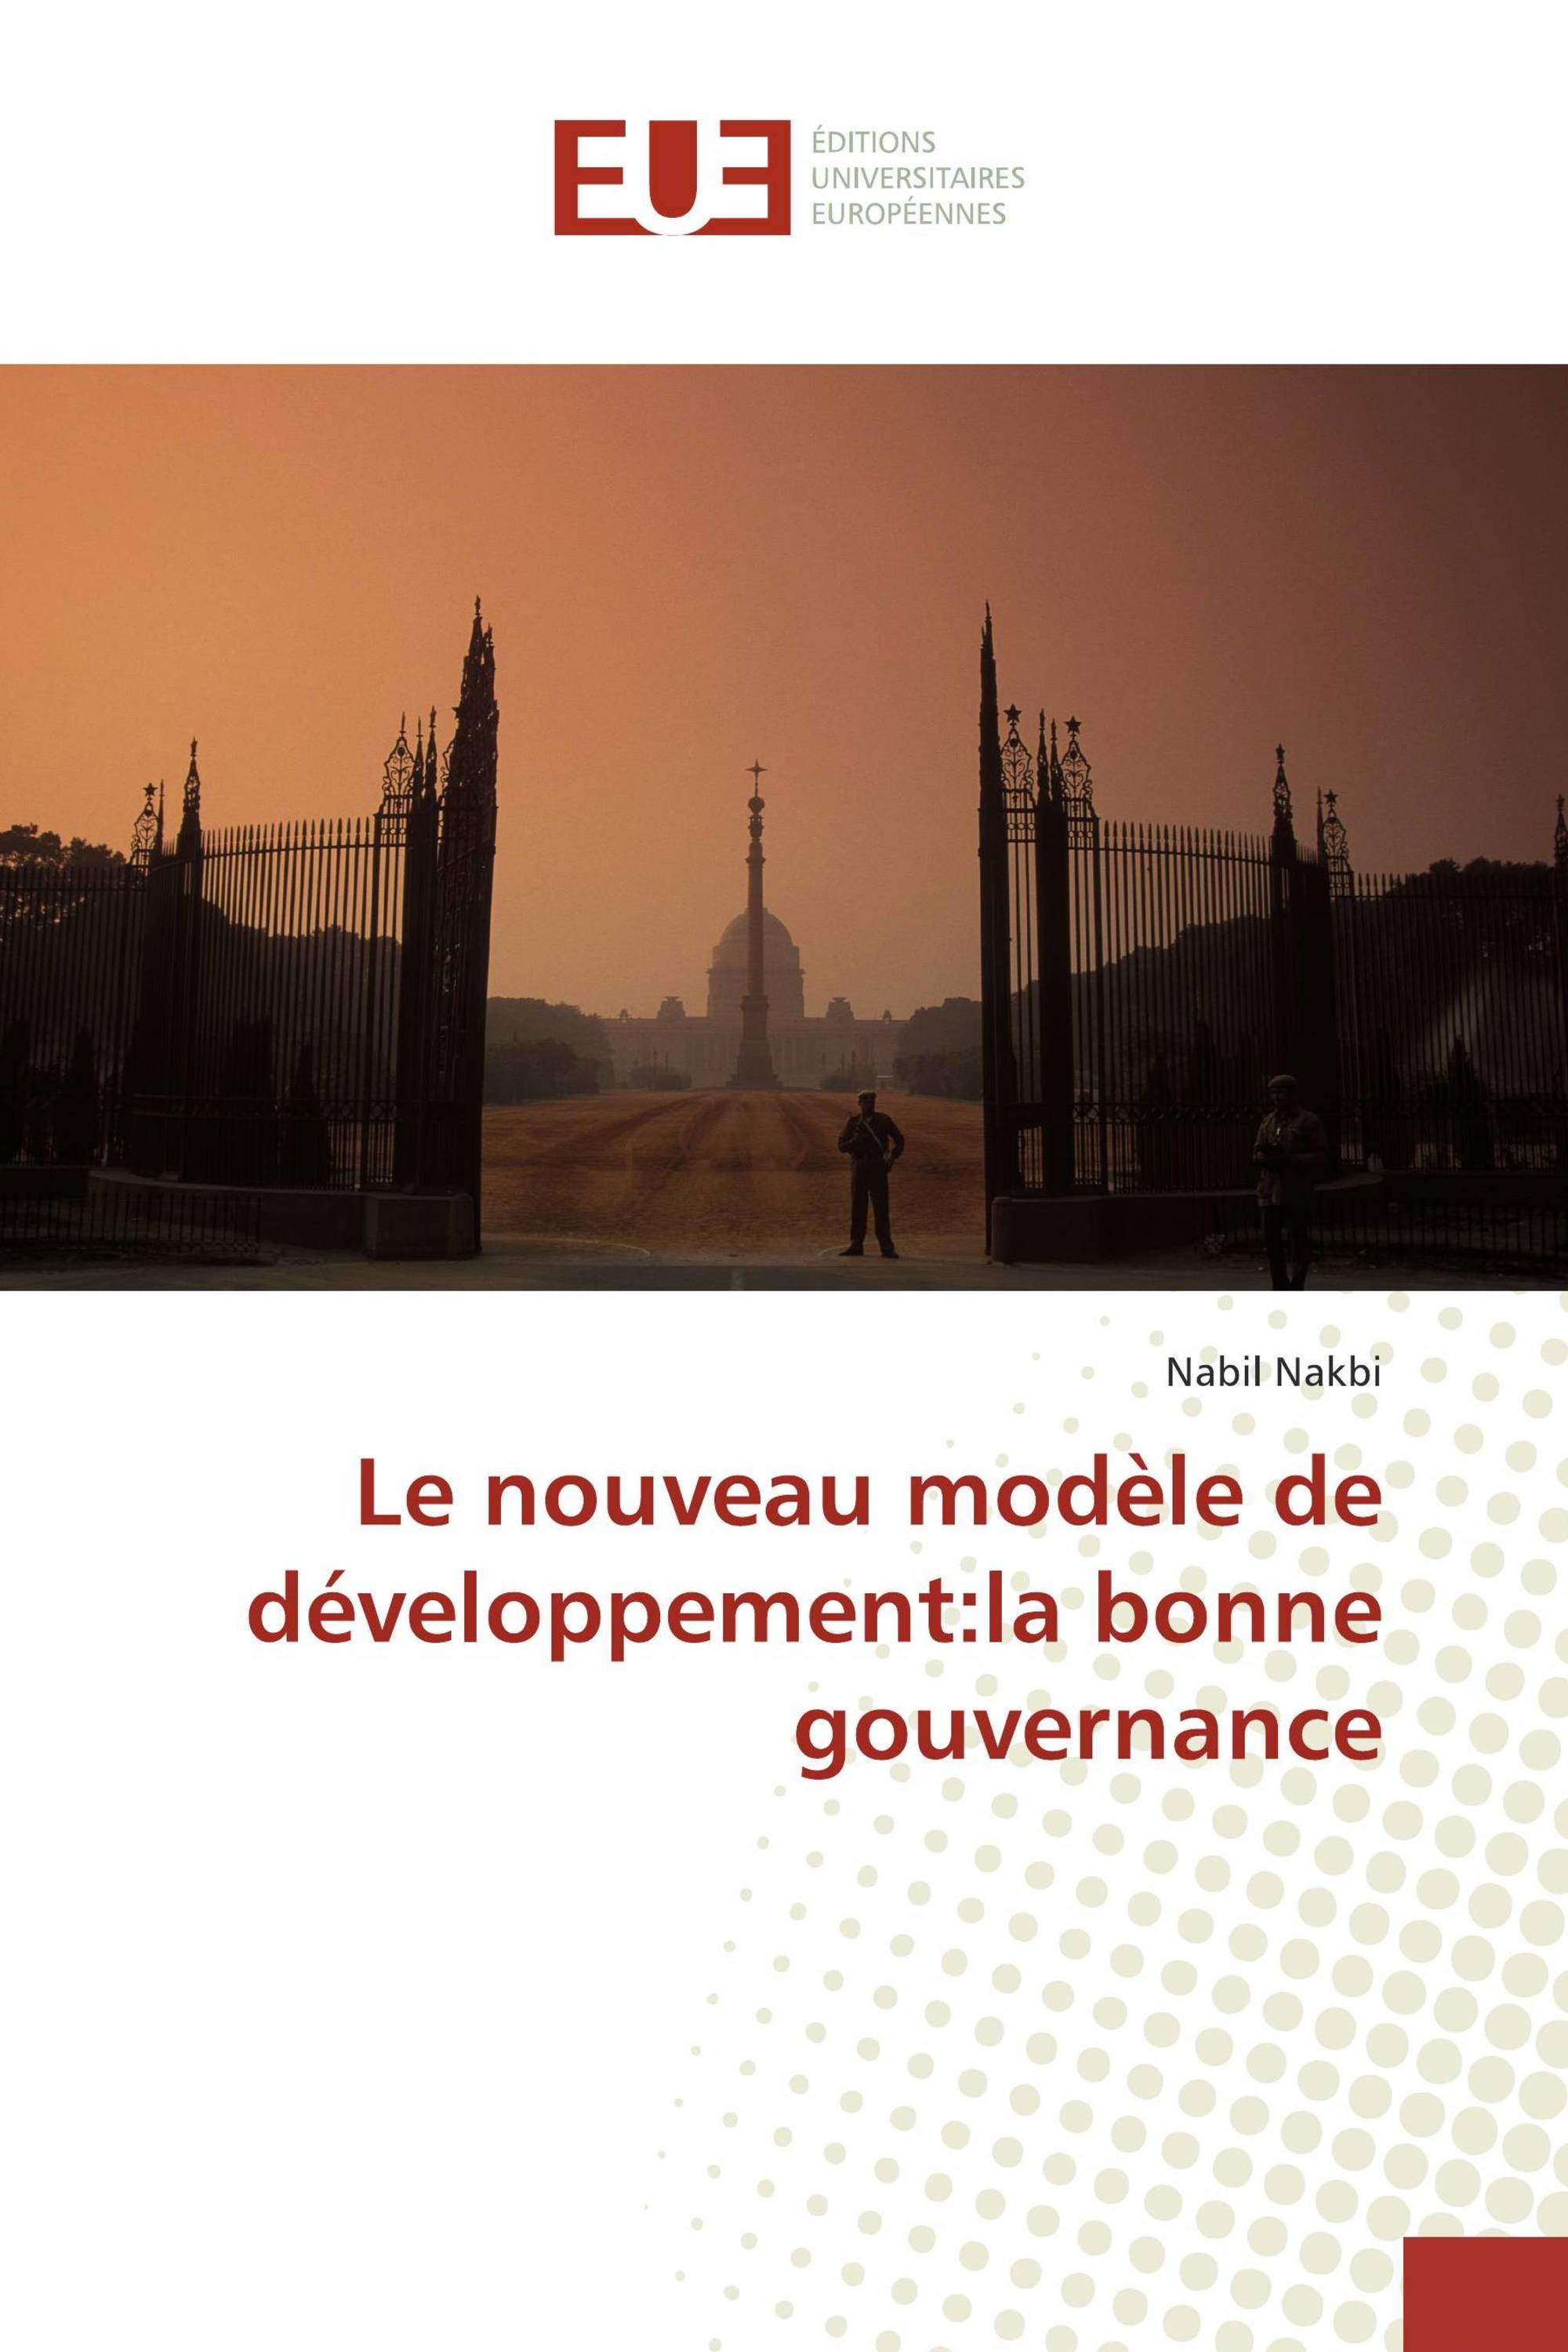 Le nouveau modèle de développement:la bonne gouvernance